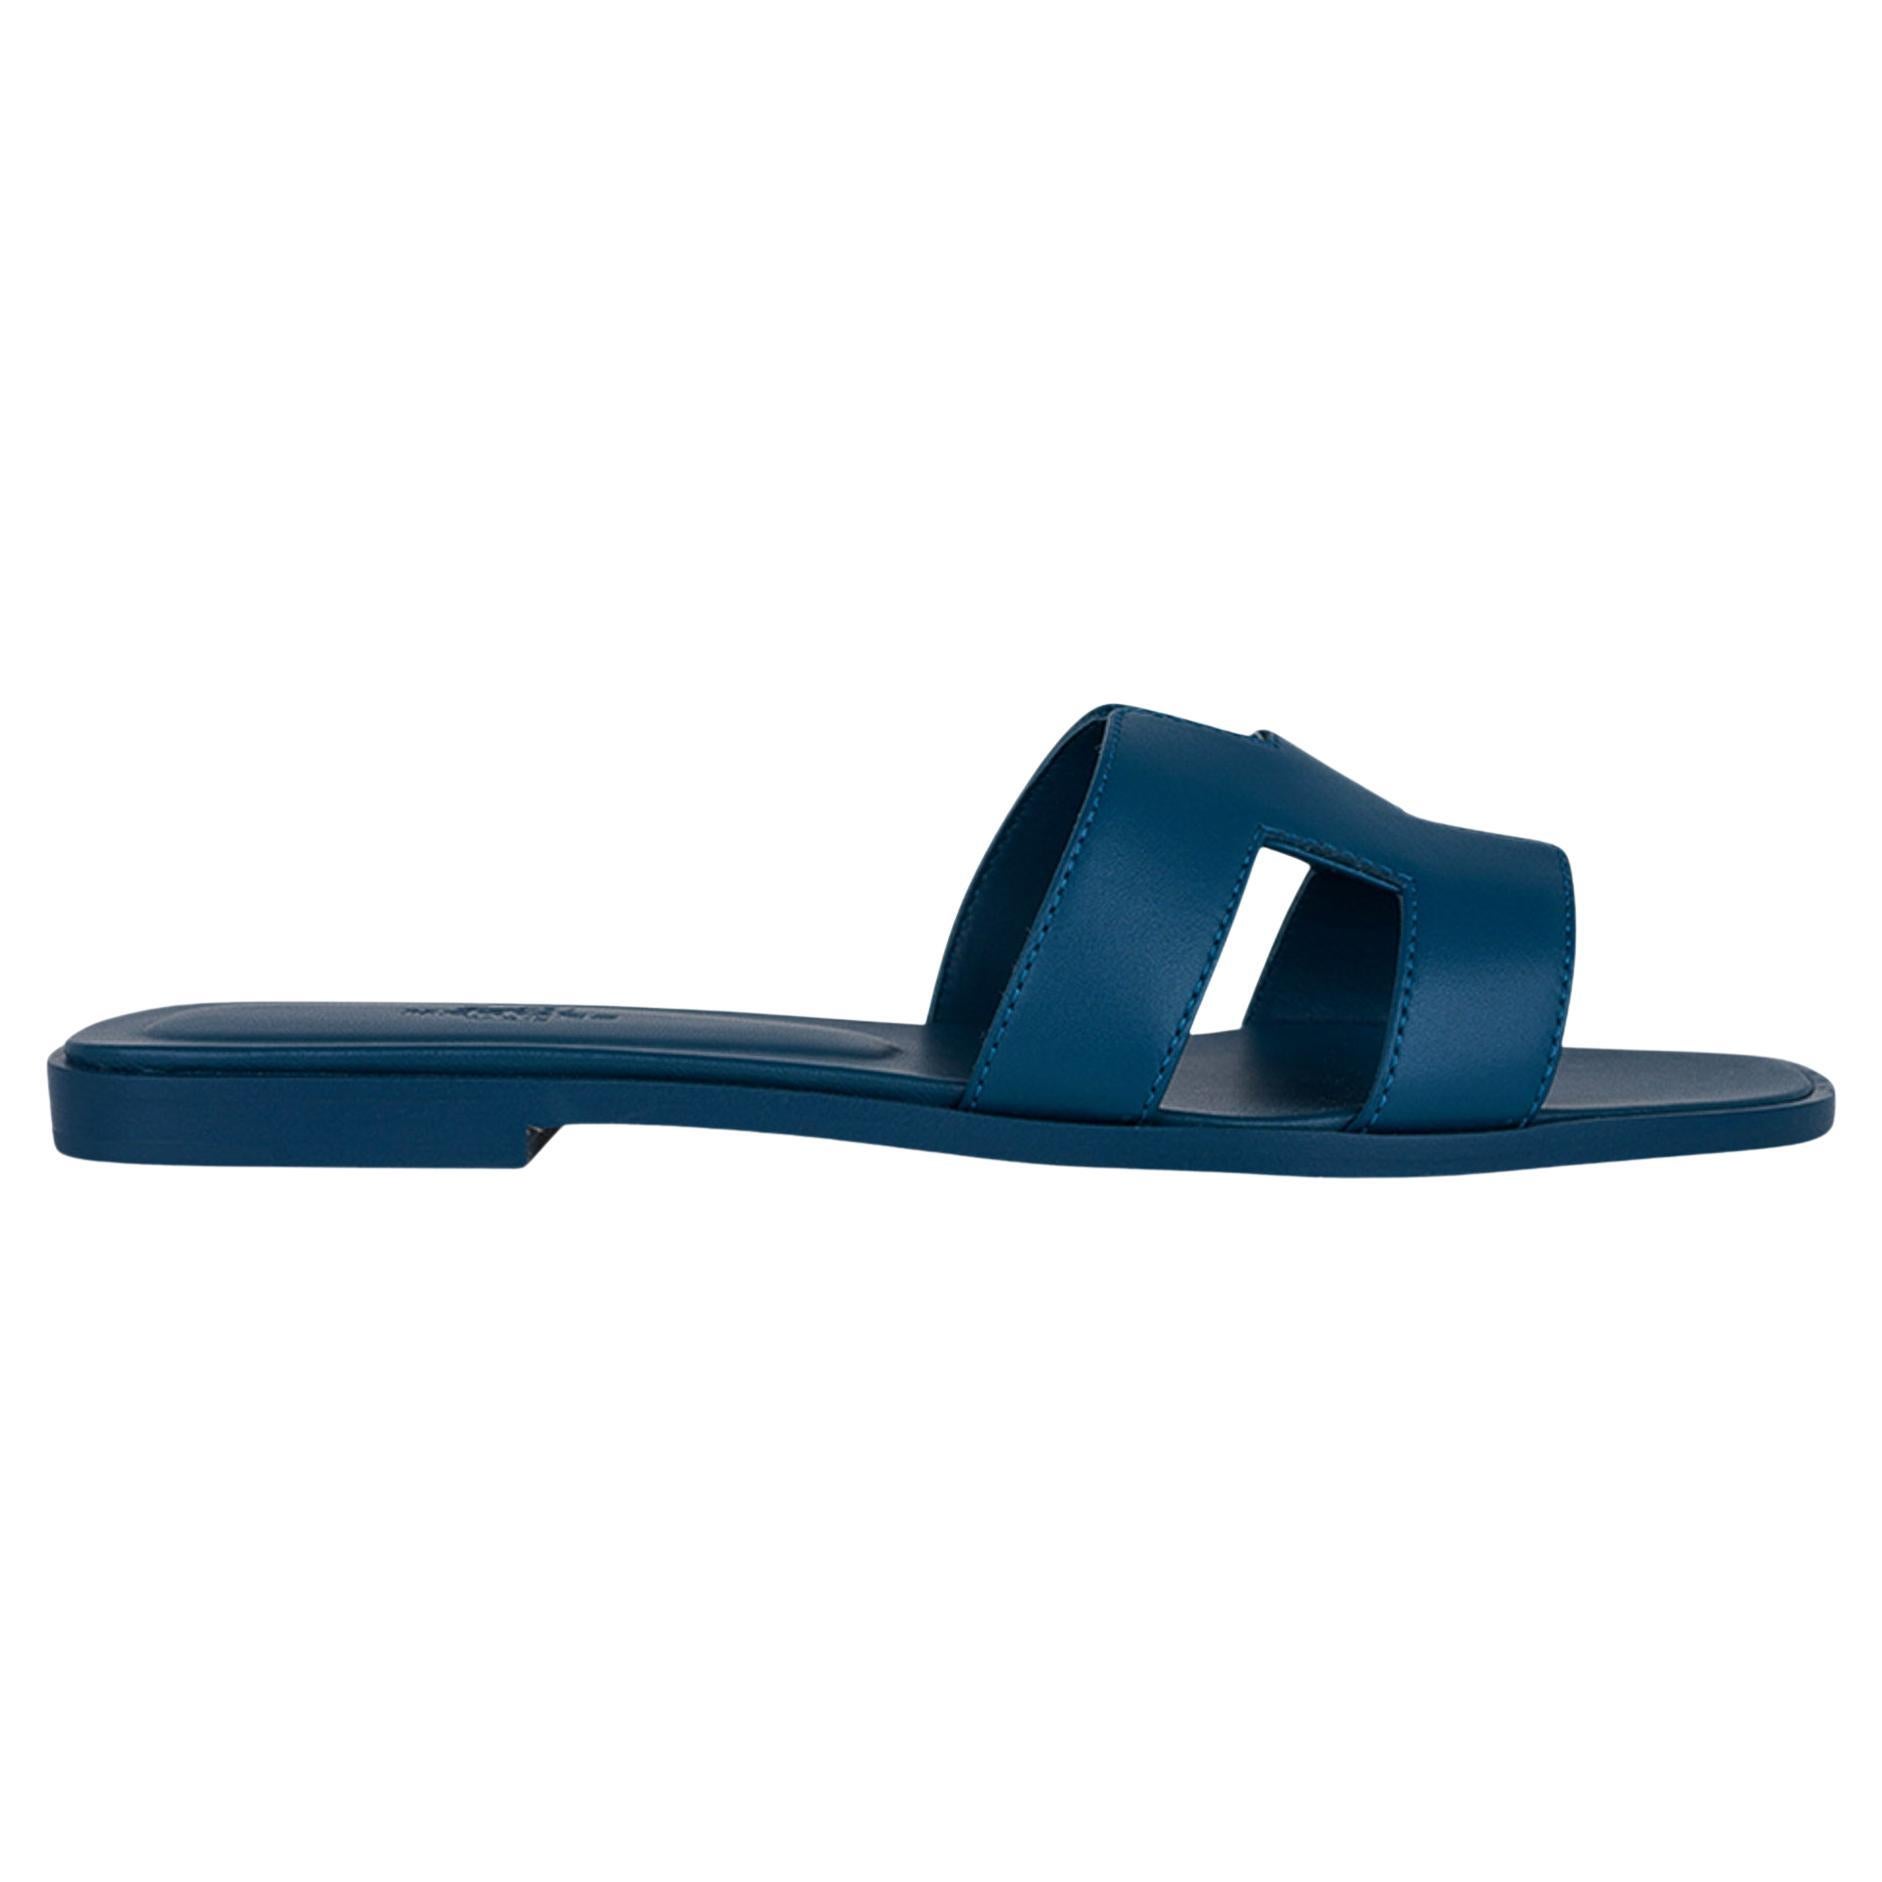 Hermes Blue Velvet Oran Sandal Box Calfskin Leather Flat Shoes 38.5 / 8.5 New w/ For Sale